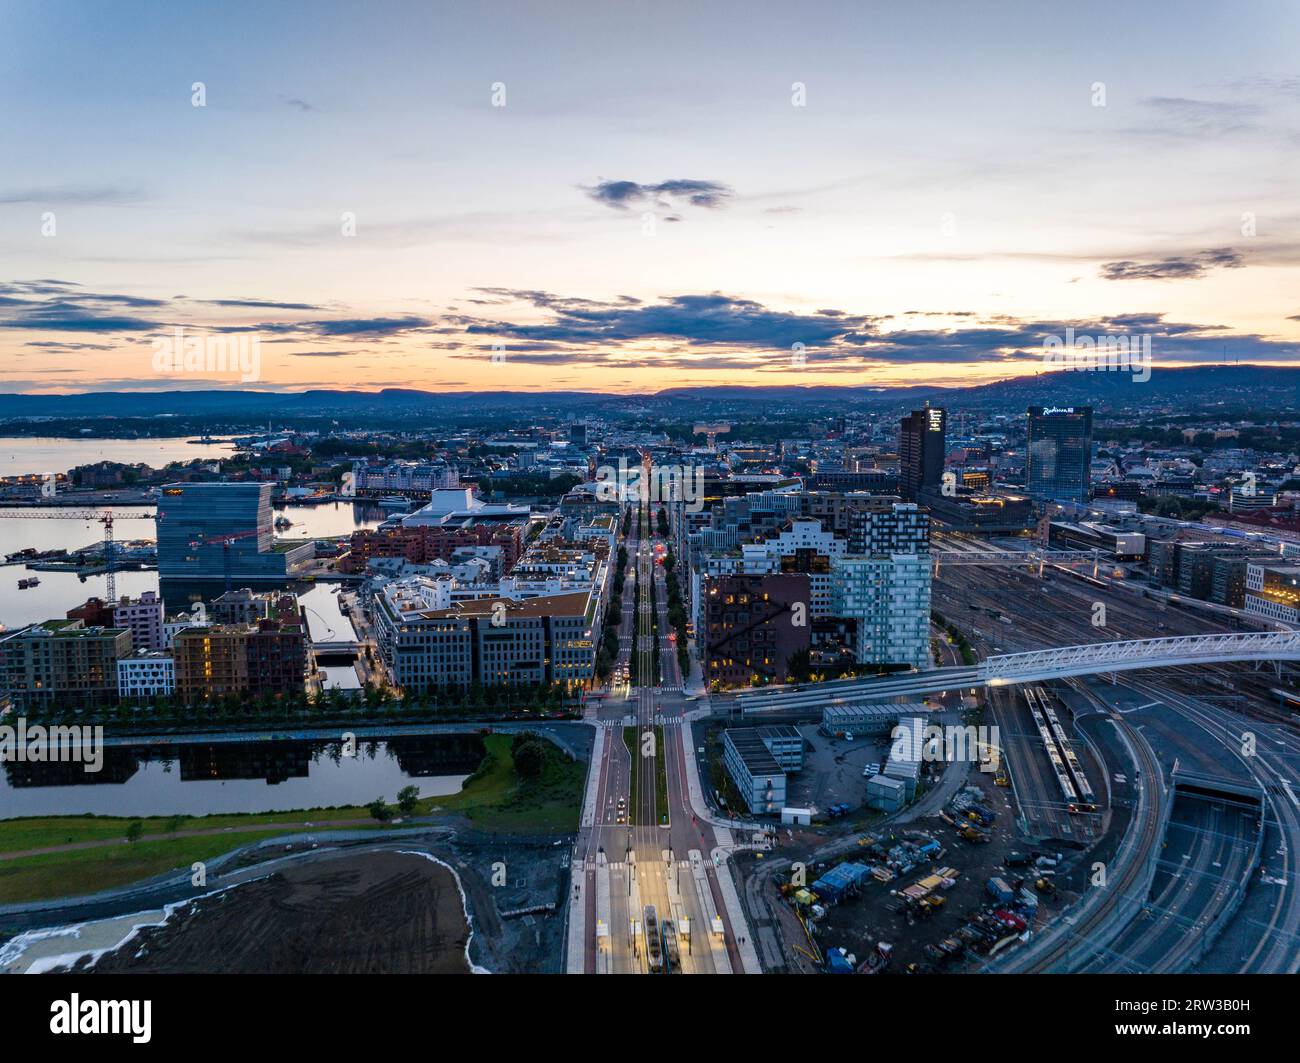 Blick aus der Vogelperspektive auf den modernen Stadtbezirk am Hauptbahnhof vor dem farbenfrohen Sonnenuntergang. Ruhige Wasseroberfläche, die den Himmel reflektiert. Oslo, Norwegen Stockfoto